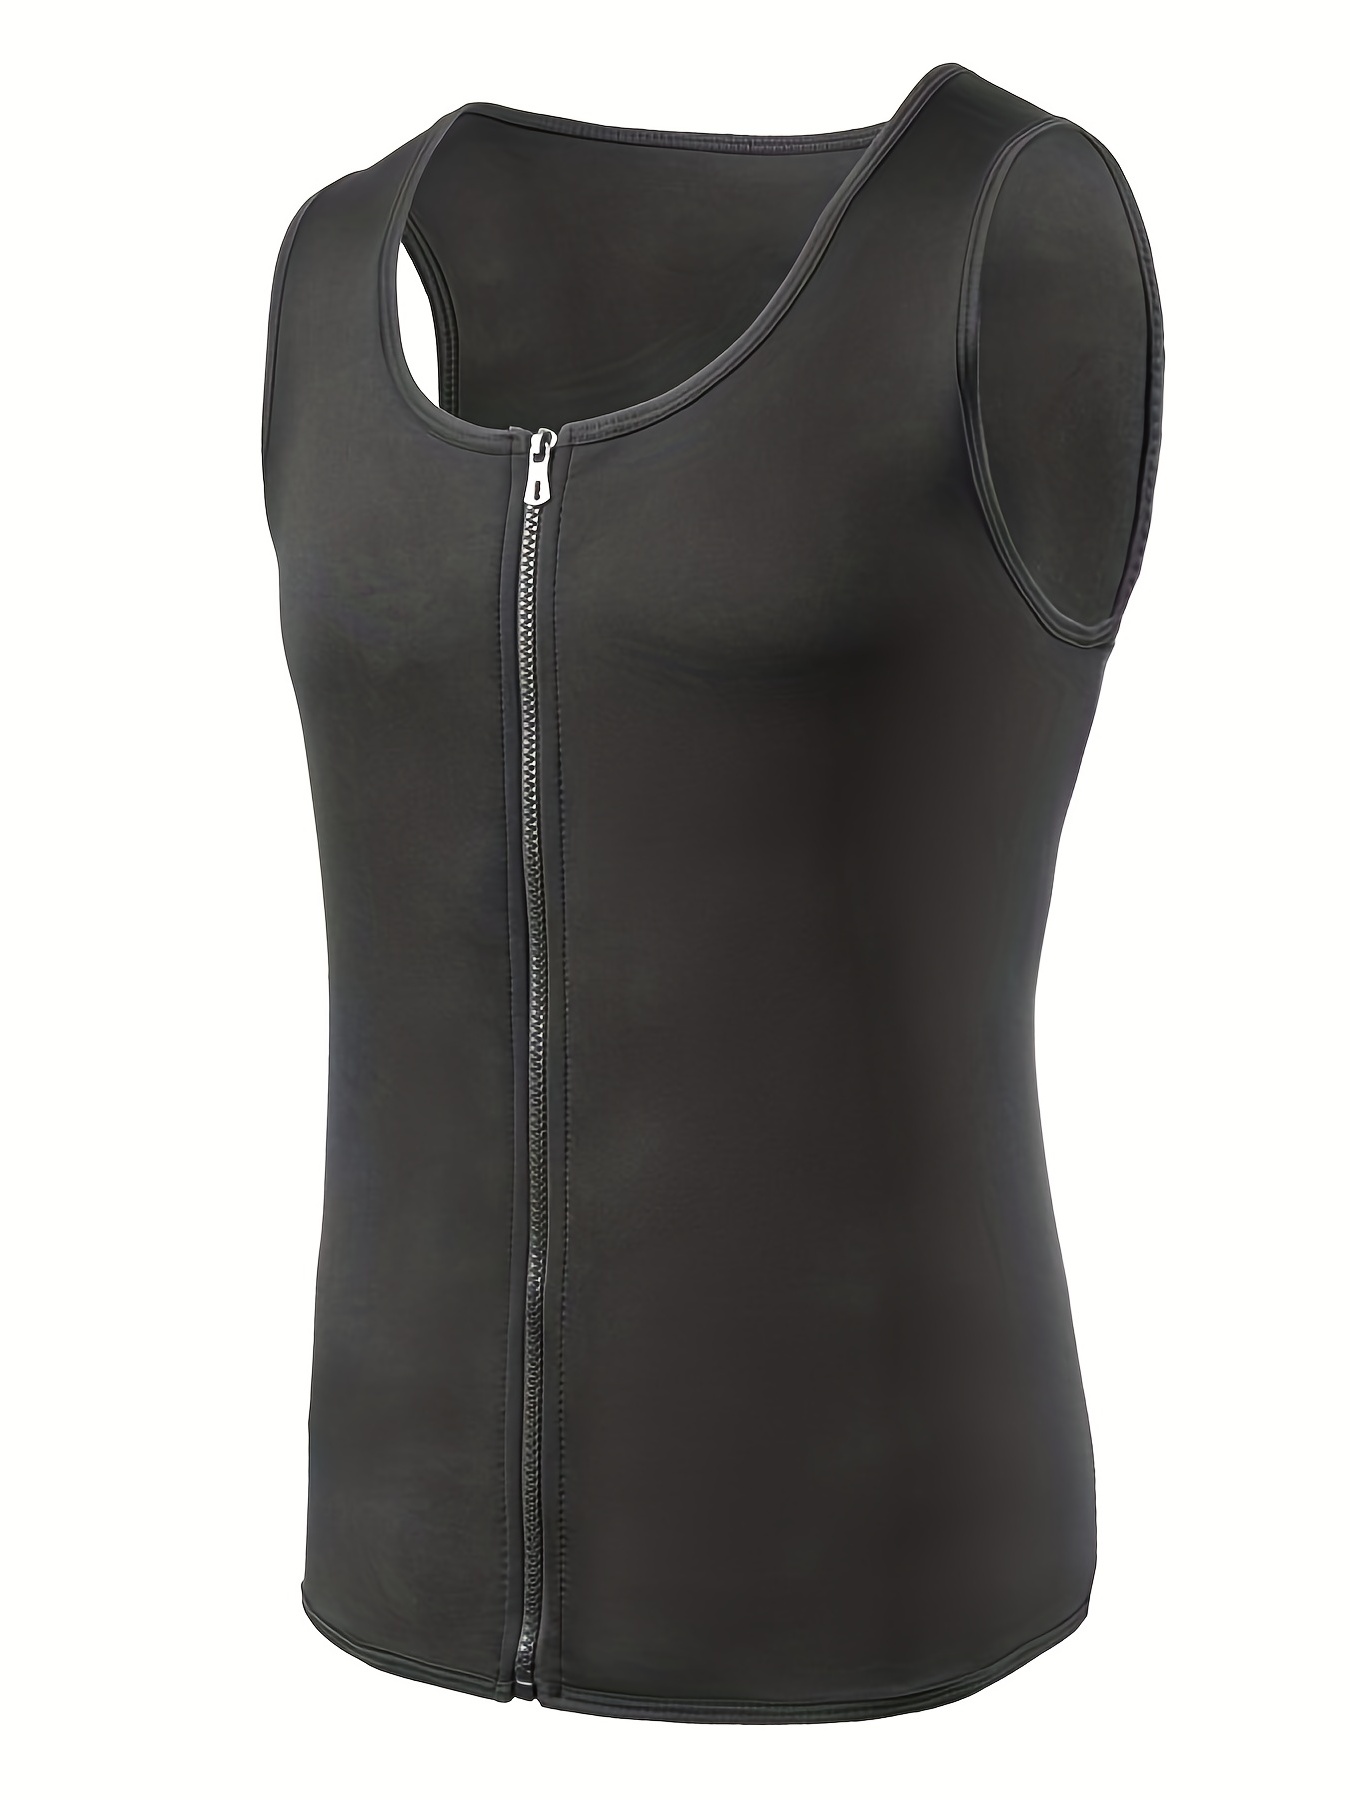 Neoprene Sauna Suit For Men Waist Trainer Sweat Vest With Zipper Adjustable  Velcro Body Shaper Tank Top